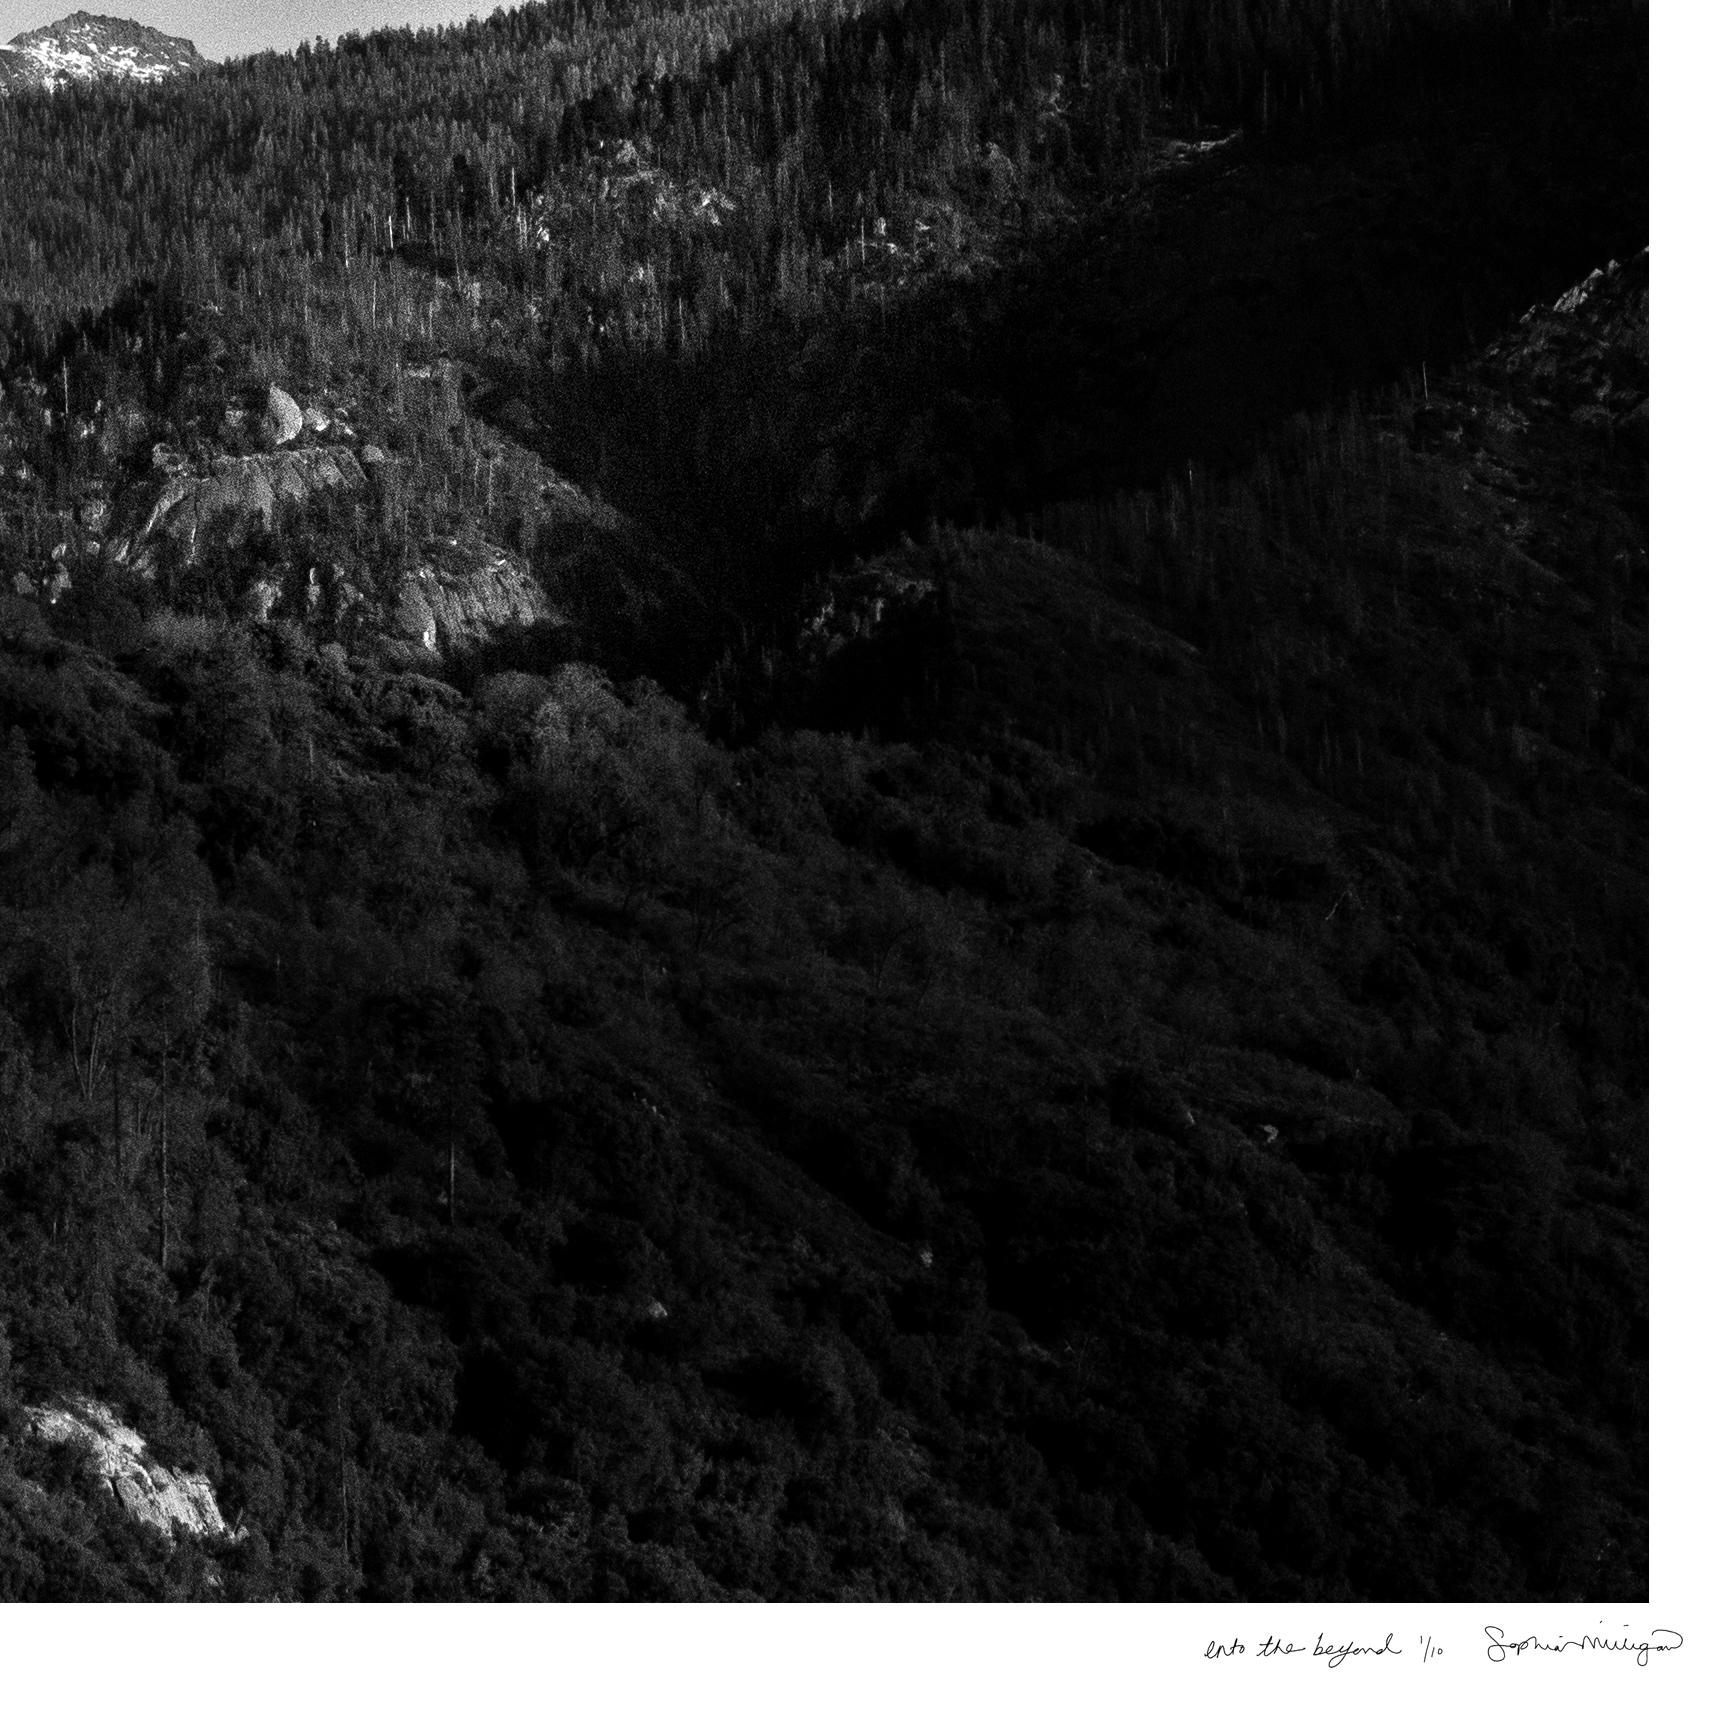 Vers l'au-delà 
Photographie d'archives en édition limitée. Non encadré, signé à la main et numéroté
_________________
Des flaques de lumière peintes dansent sur le paysage montagneux richement stratifié de la Sierra Nevada, en Californie. 
Les